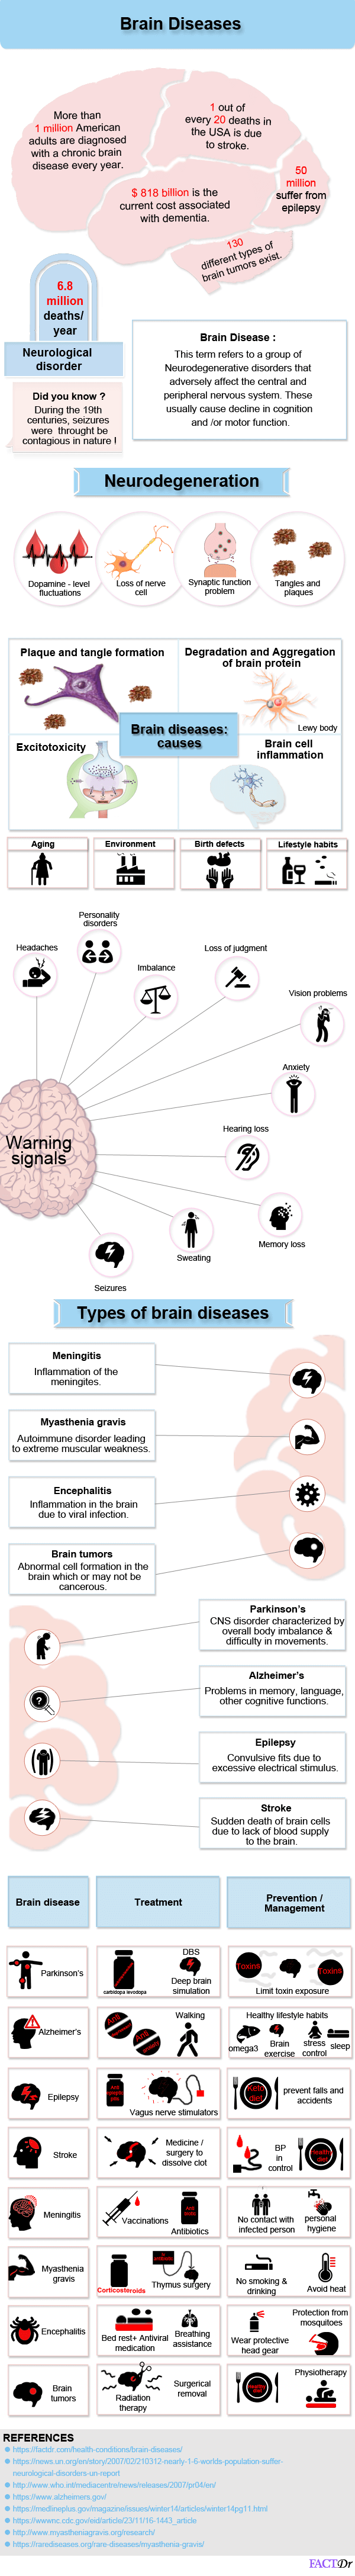 Brain diseases